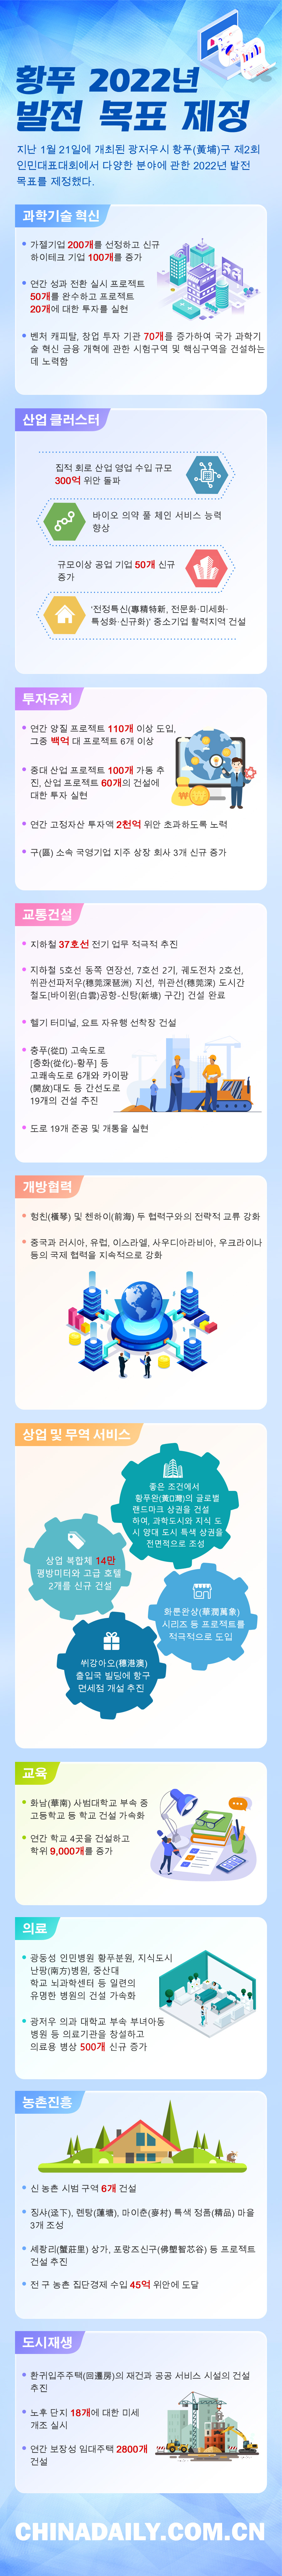 韩语图表2.jpg